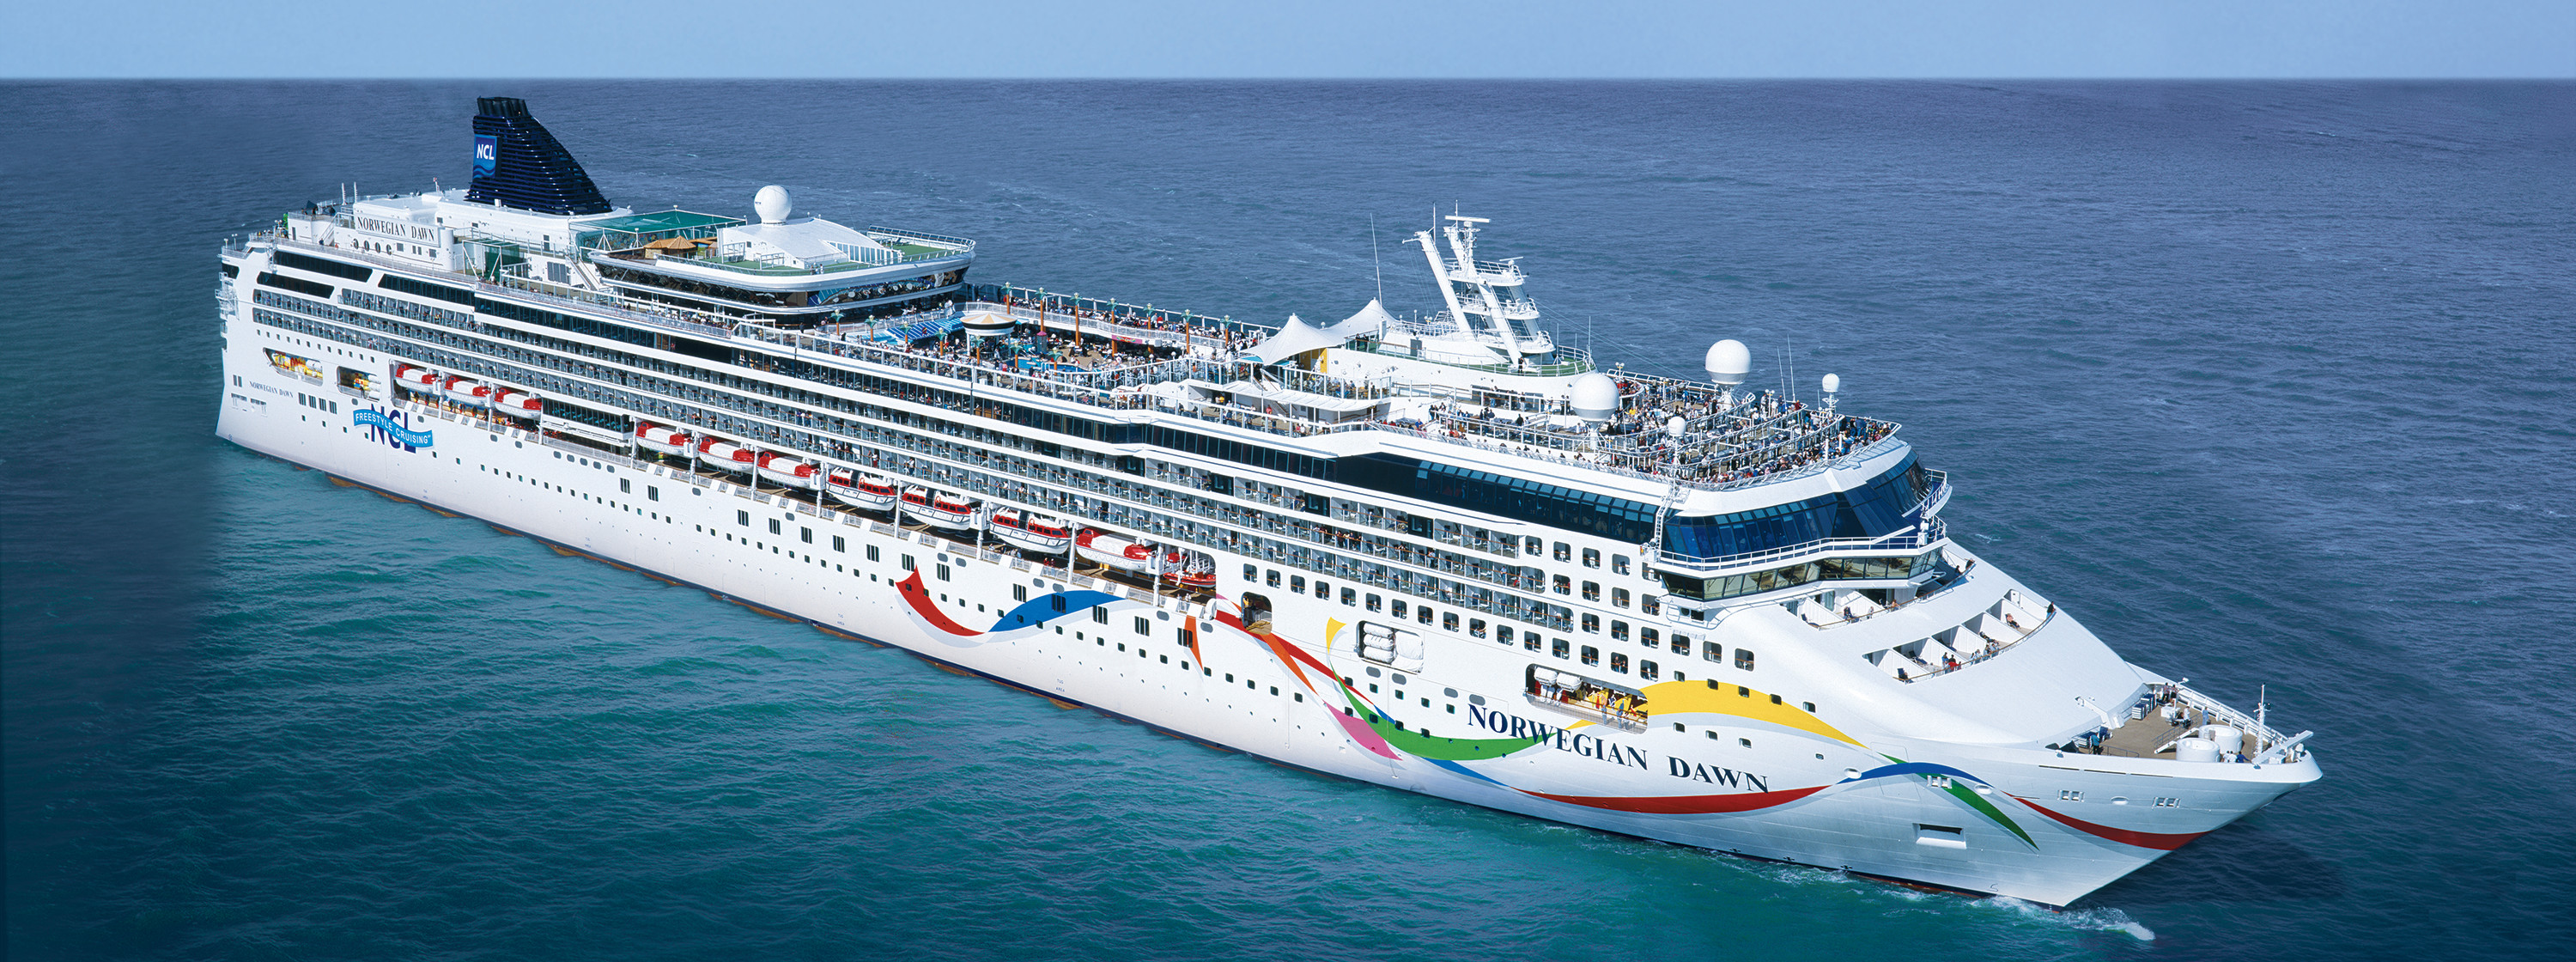 Greece & Croatia Cruise on Norwegian Dawn